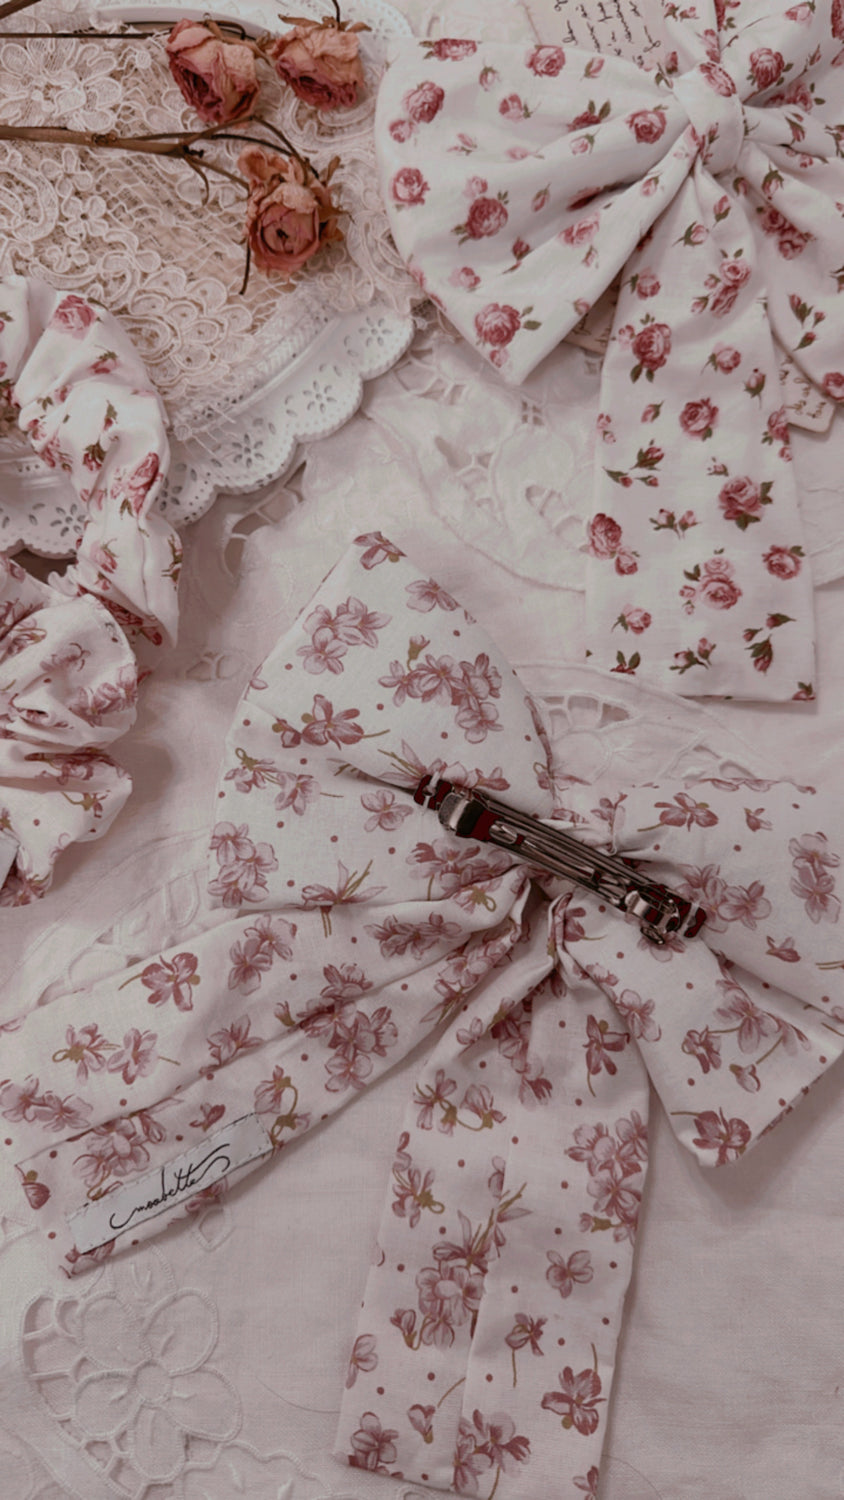 handmade fermaglio fiocco in cotone bianco con fiorellini rosa